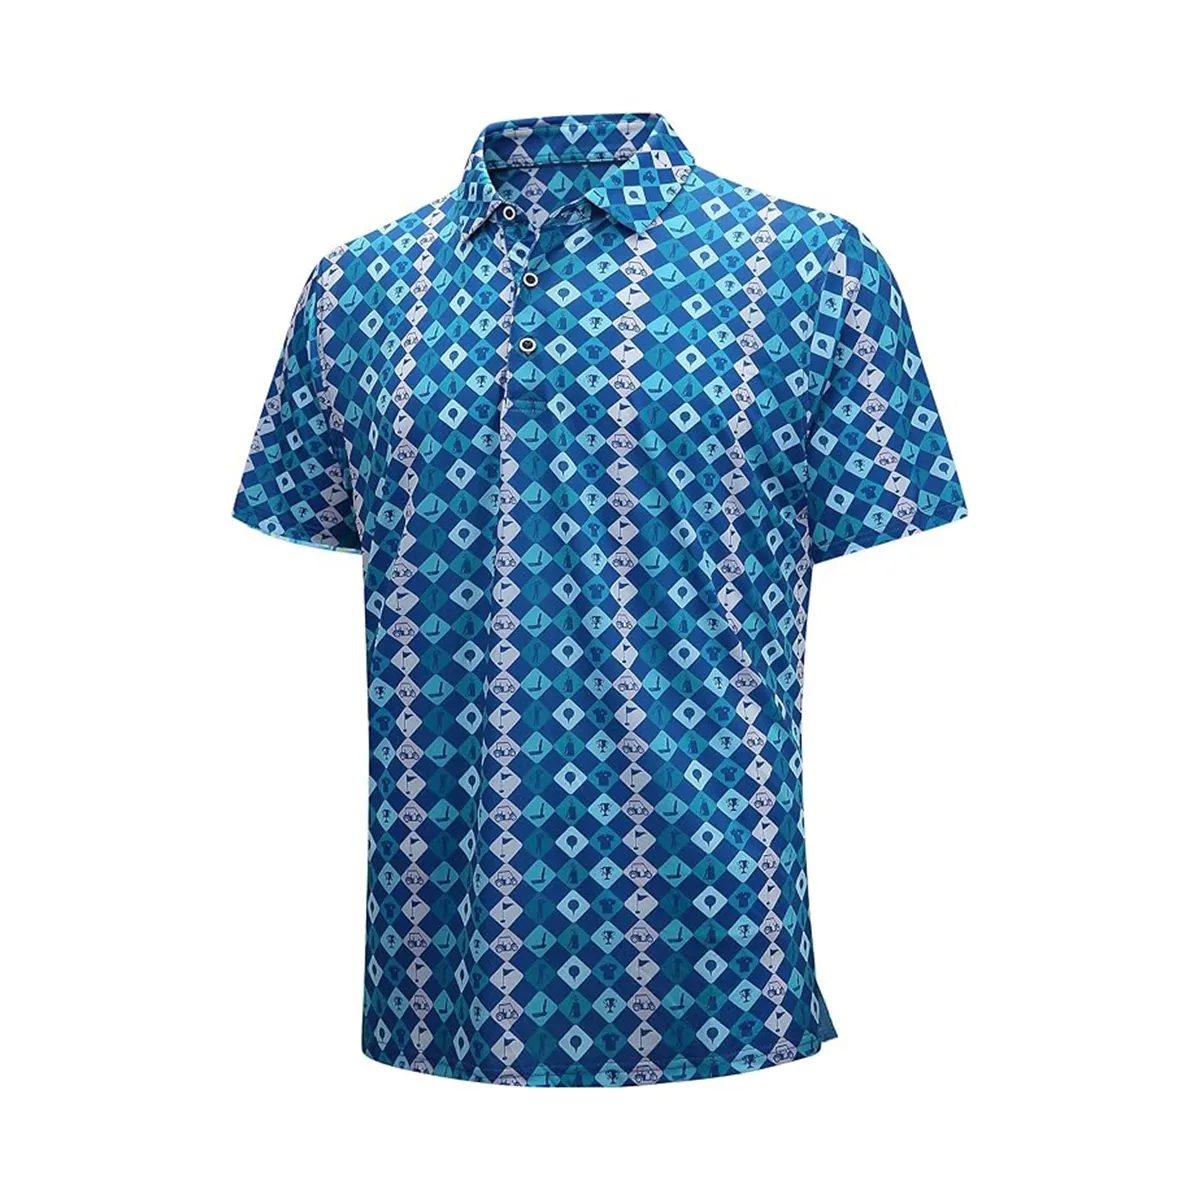 Мужская рубашка-поло из трикотажной ткани ручной работы, Высококачественная рубашка-поло с индивидуальным принтом